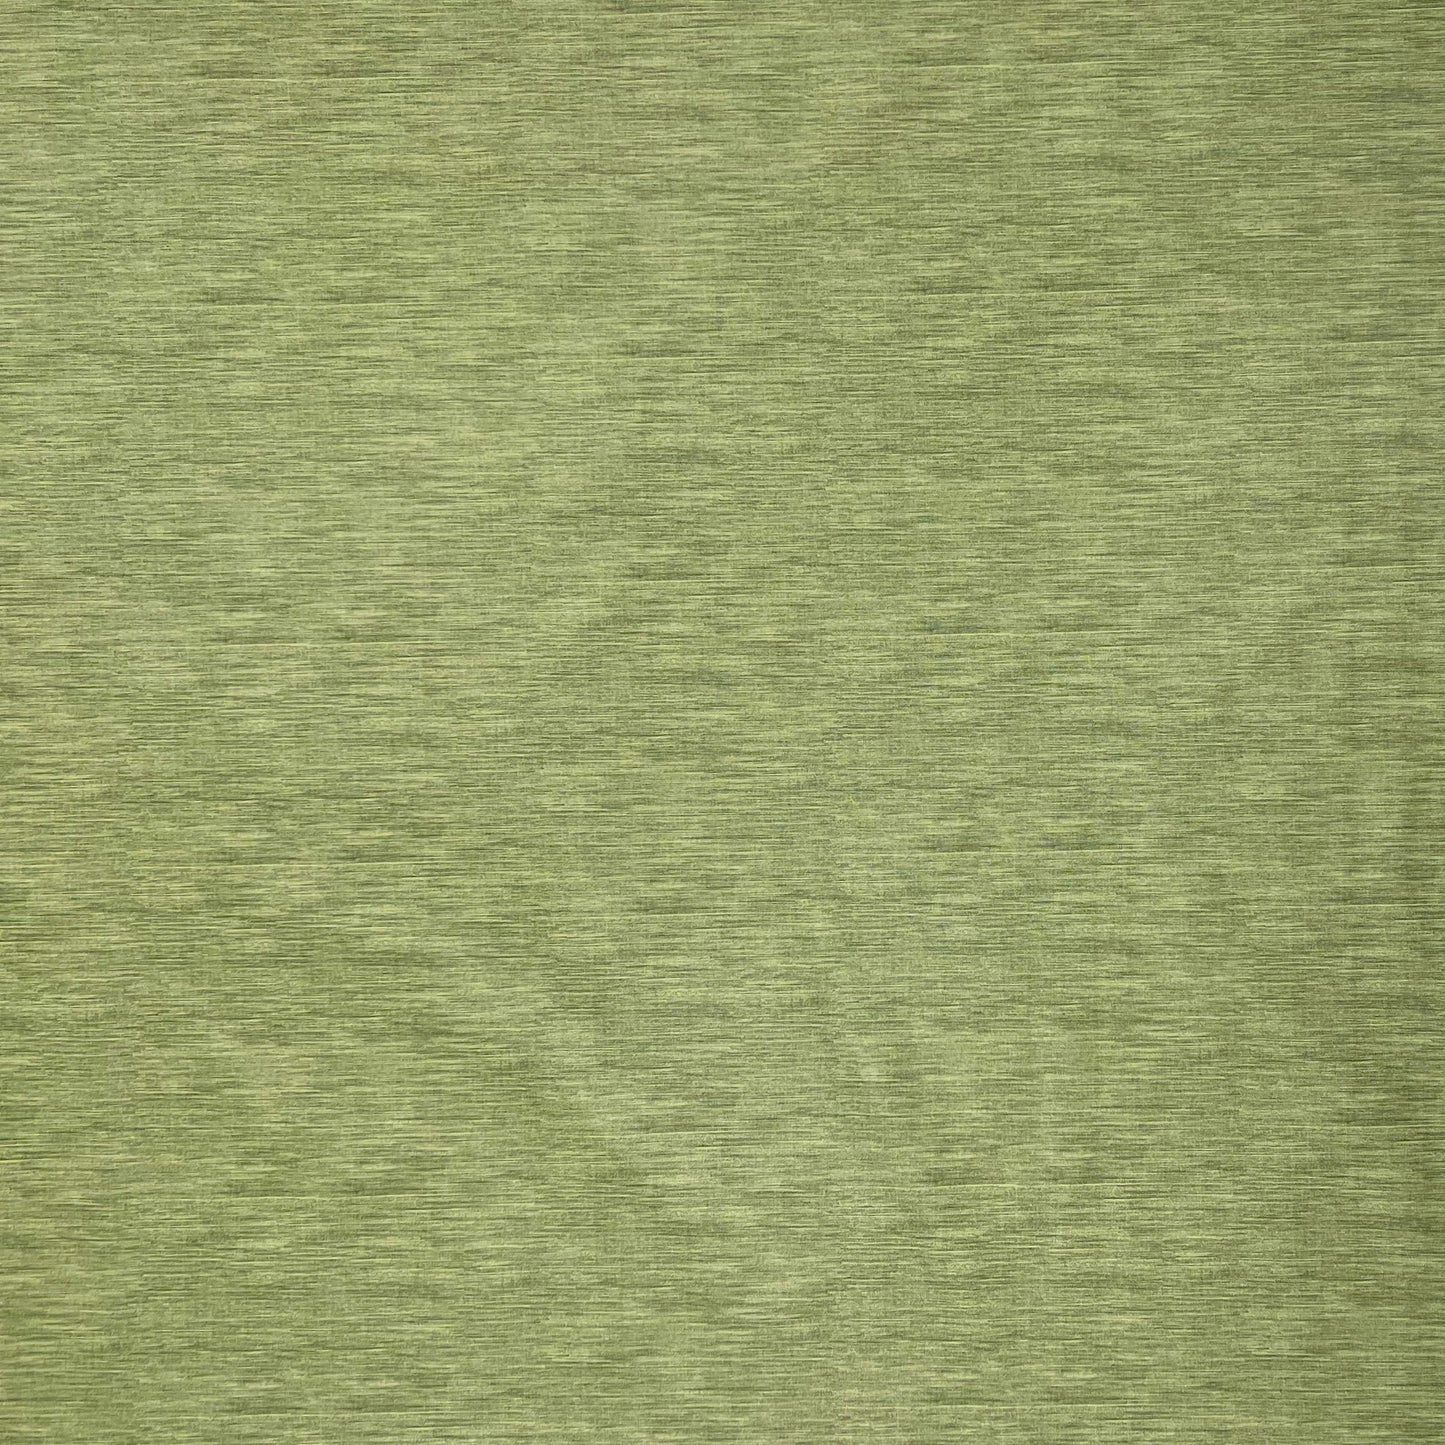 Wachstuch Tischdecke geprägt P733-5 Leinenstruktur grün olivgrün eckig rund oval